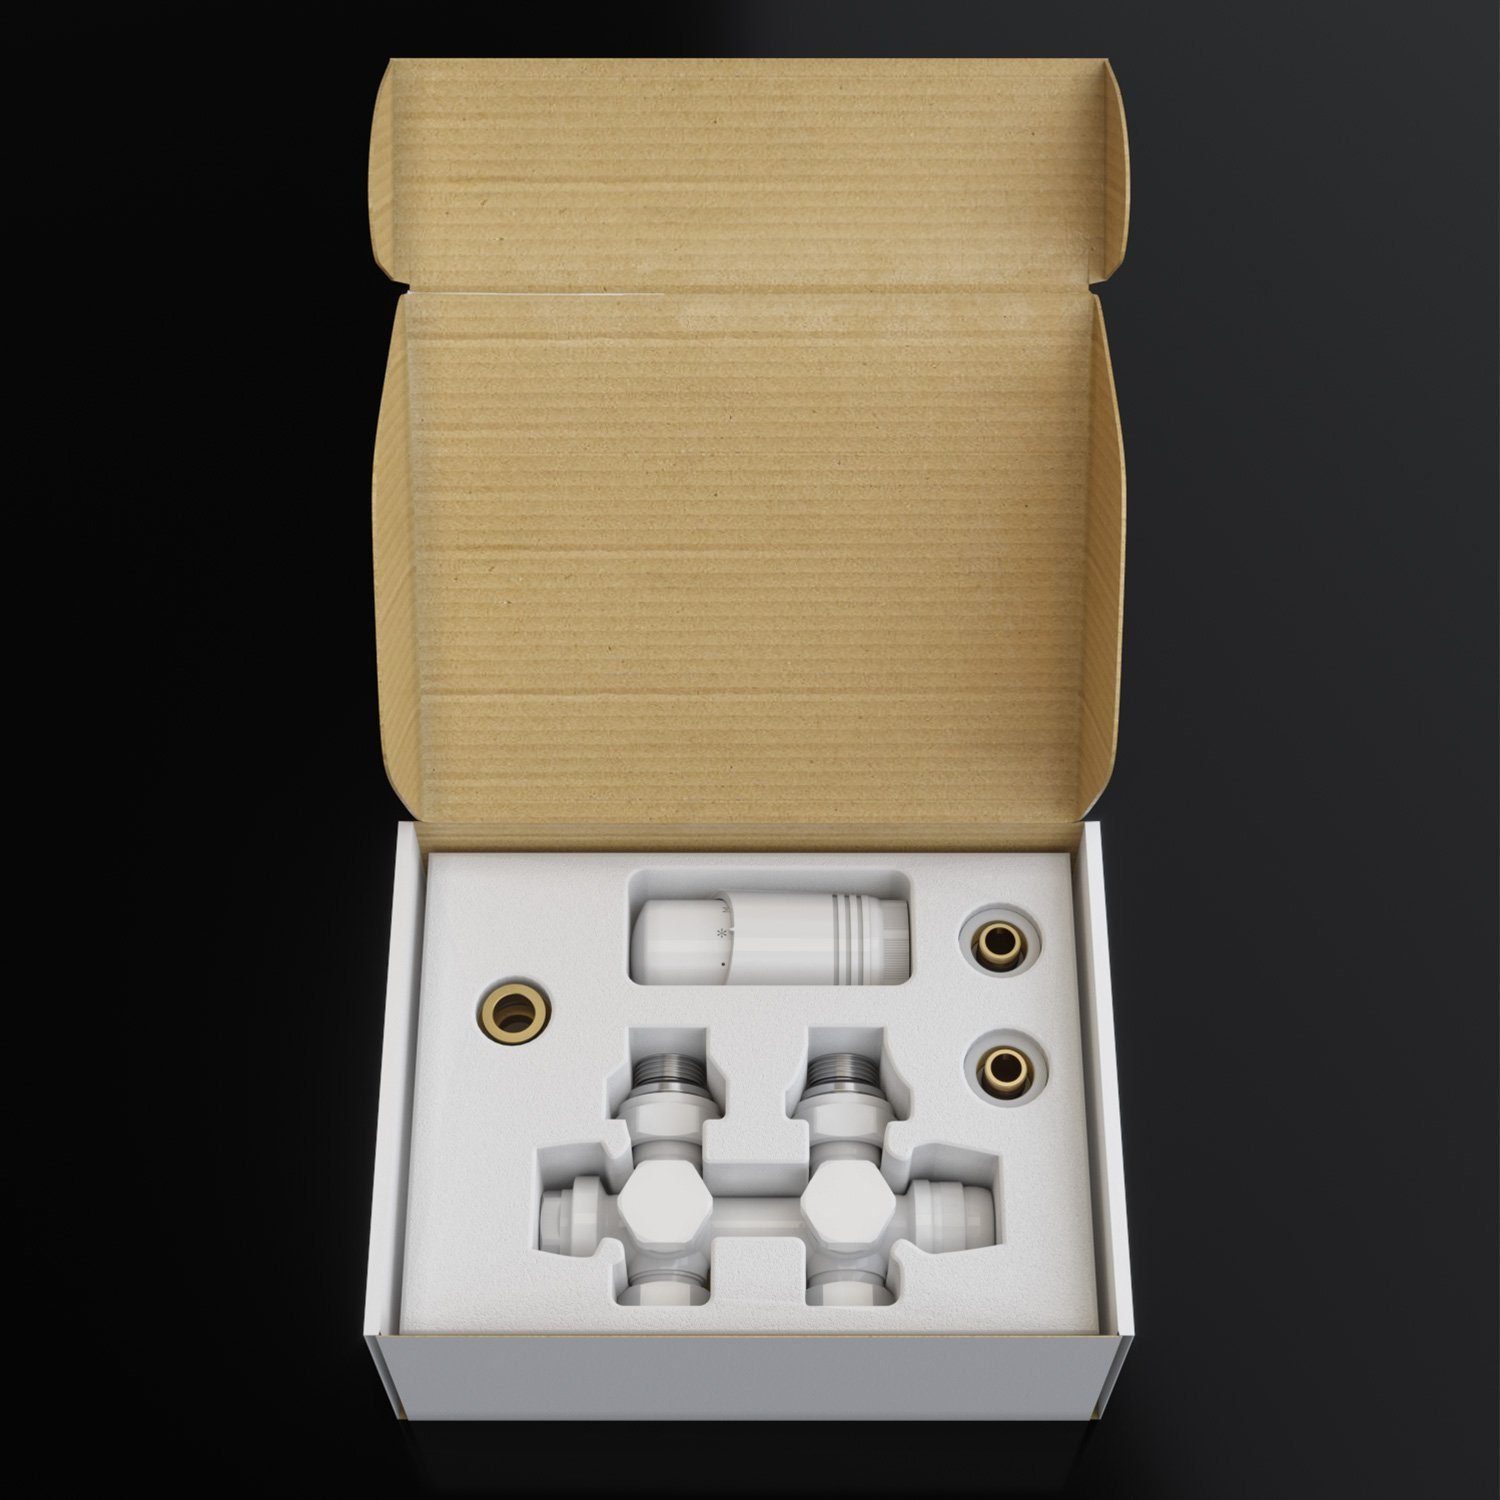 1/2" 50mm Heizkörper Heizkörperthermostat mit Anschlussarmatur, Set ; Weiß G für Thermostatkopf SONNI Thermostat Multiblock